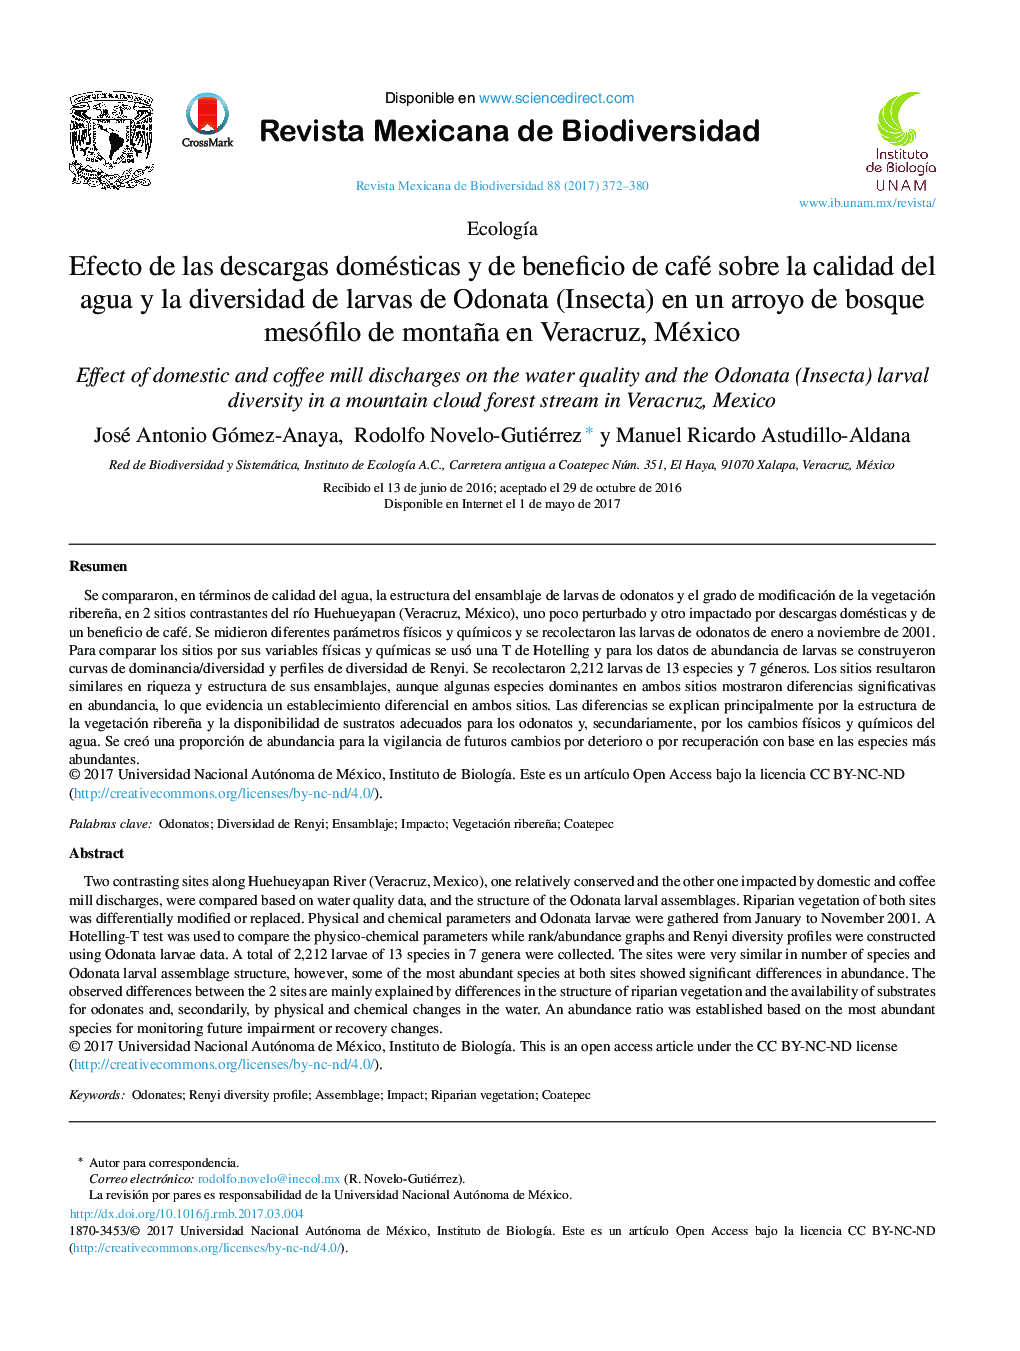 Efecto de las descargas domésticas y de beneficio de café sobre la calidad del agua y la diversidad de larvas de Odonata (Insecta) en un arroyo de bosque mesófilo de montaña en Veracruz, México